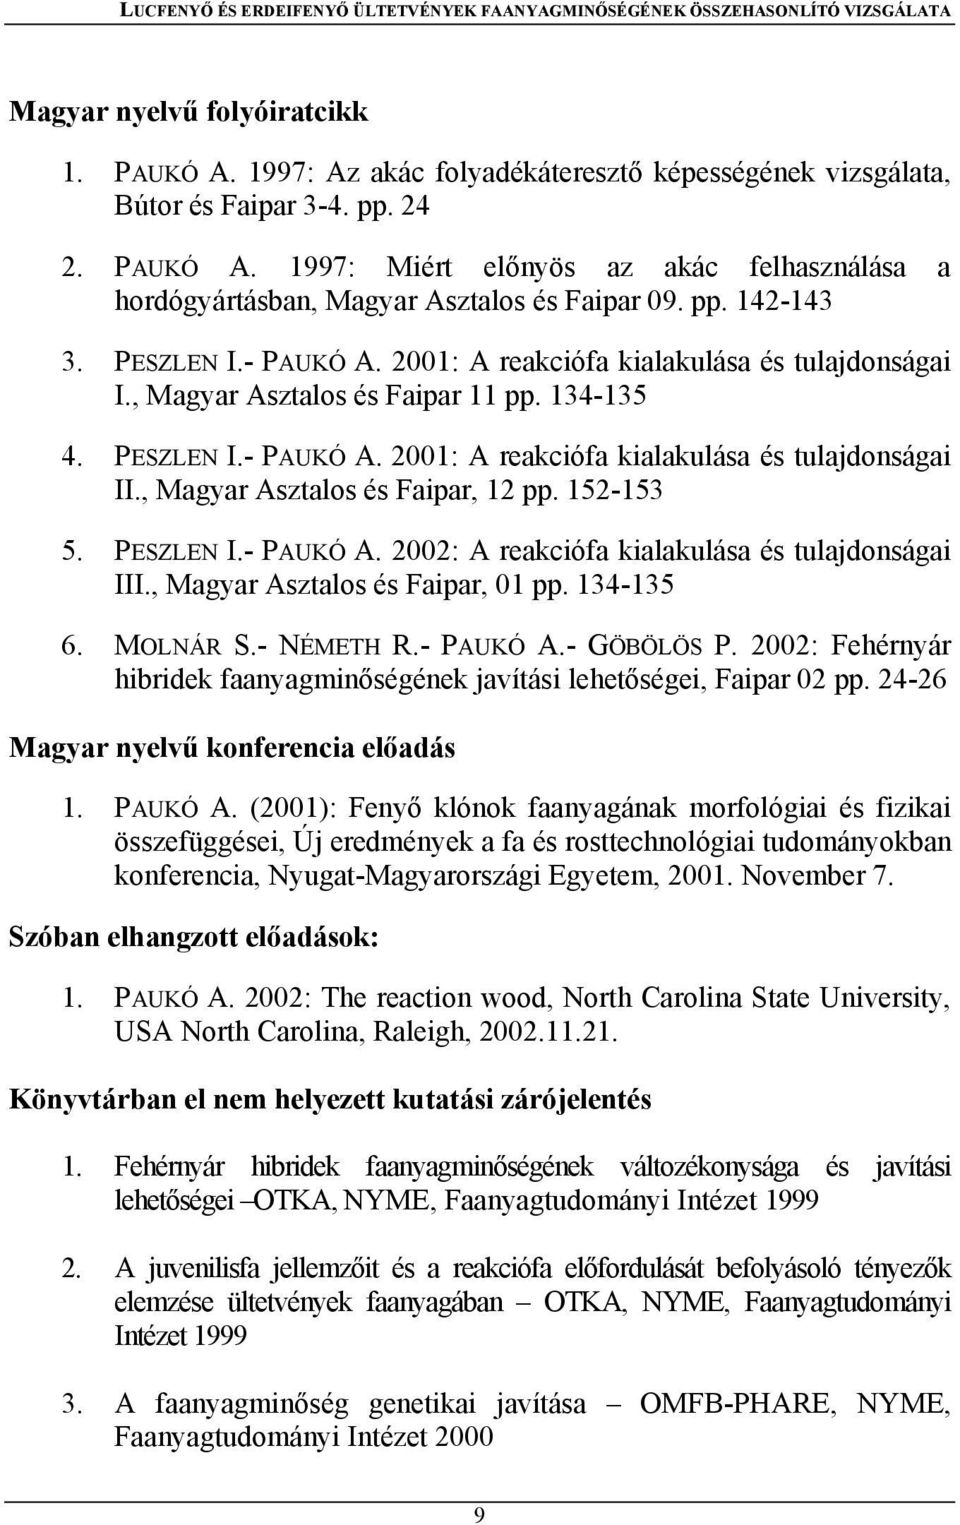 , Magyar Asztalos és Faipar, 12 pp. 152-153 5. PESZLEN I.- PAUKÓ A. 2002: A reakciófa kialakulása és tulajdonságai III., Magyar Asztalos és Faipar, 01 pp. 134-135 6. MOLNÁR S.- NÉMETH R.- PAUKÓ A.- GÖBÖLÖS P.